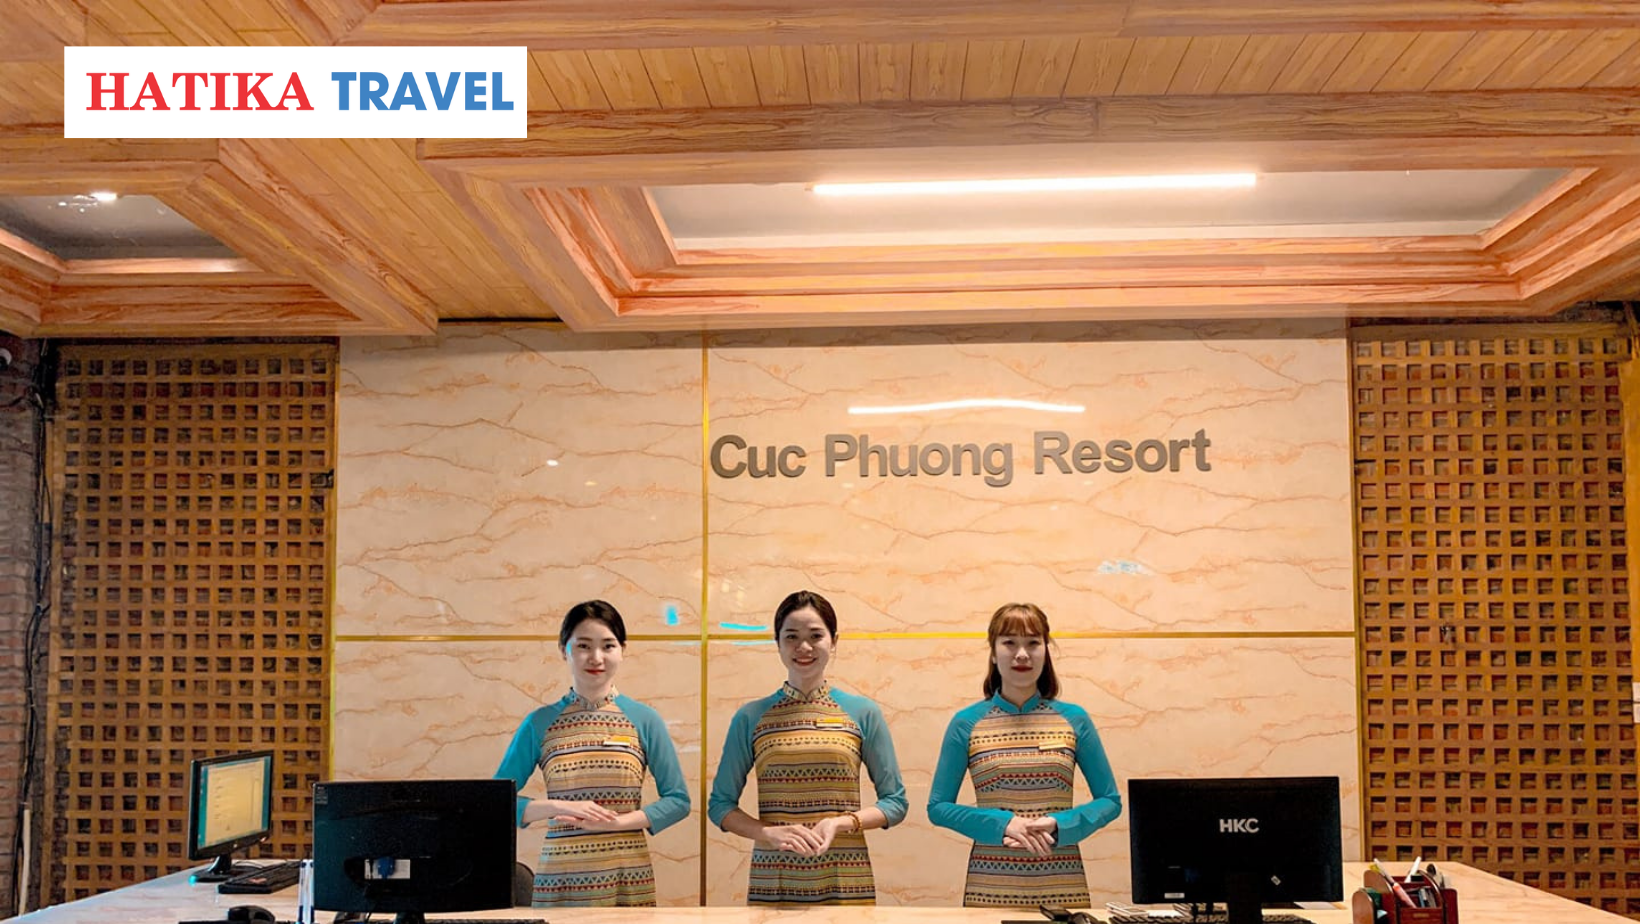 Cúc Phương Ninh Bình Resort & Spa